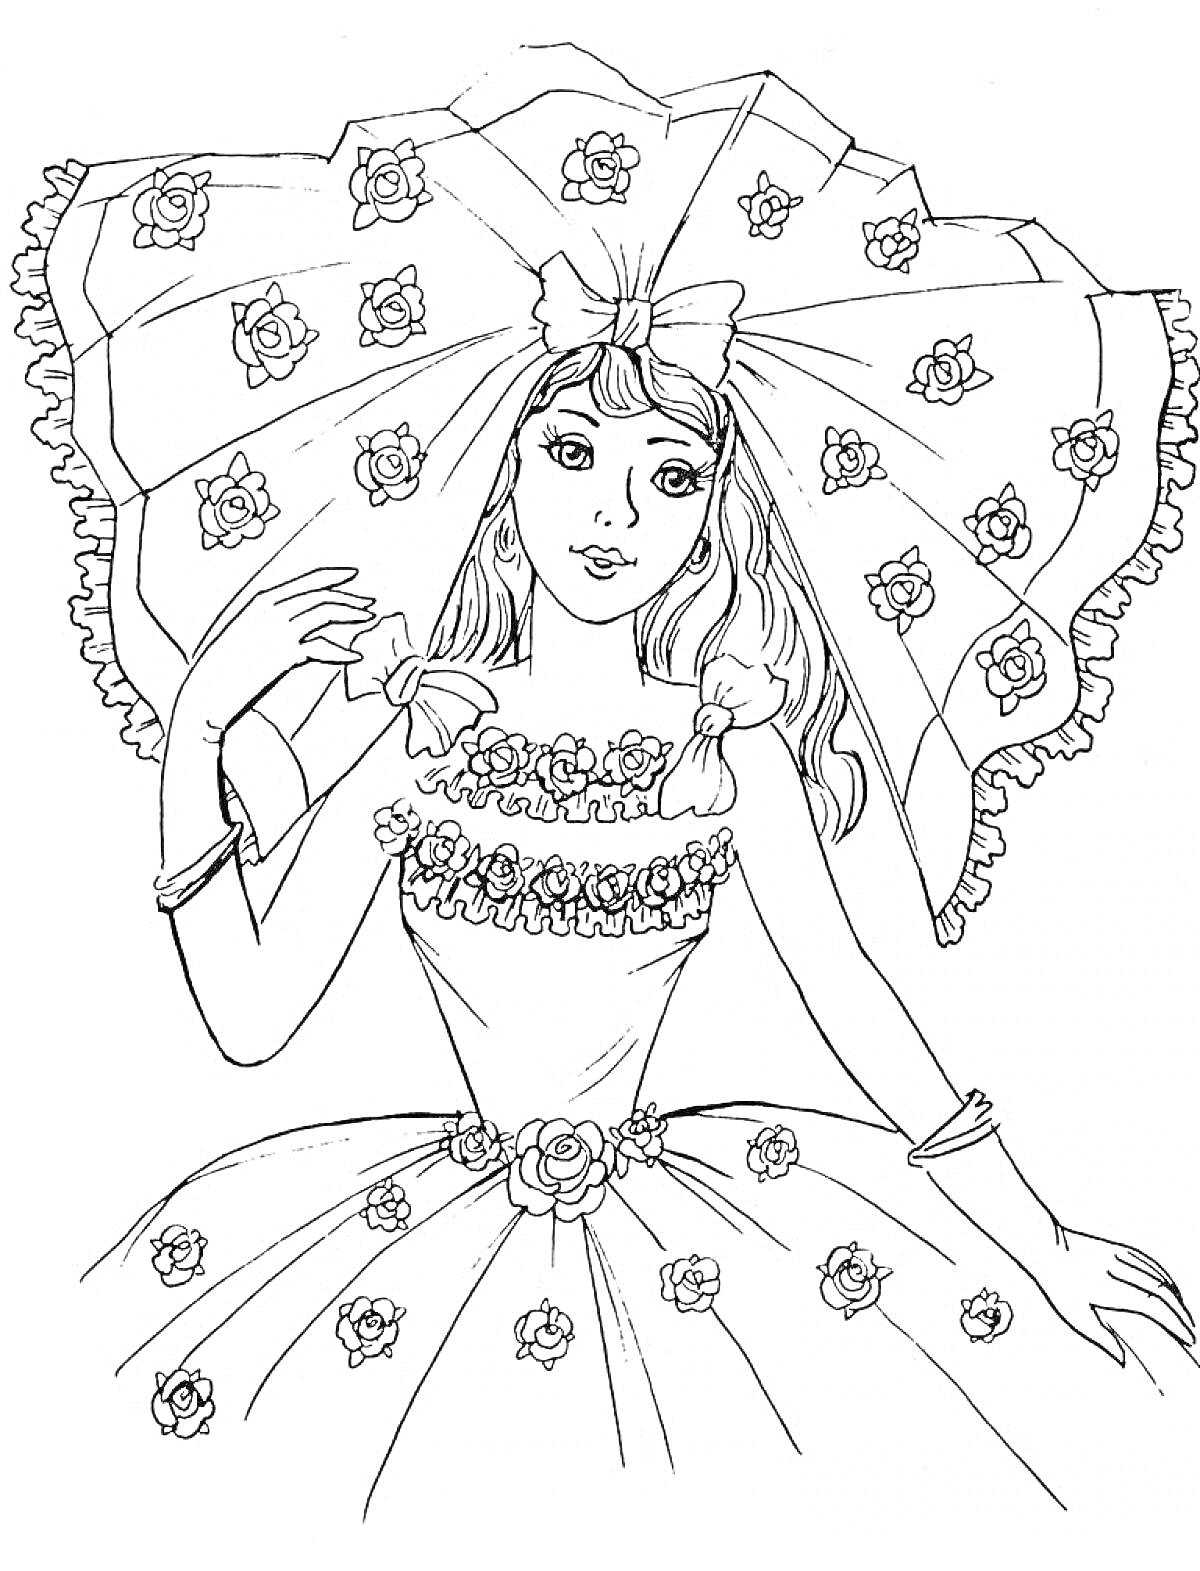 Раскраска Девушка в элегантном платье с розами и большим шляпой с оборками и цветами